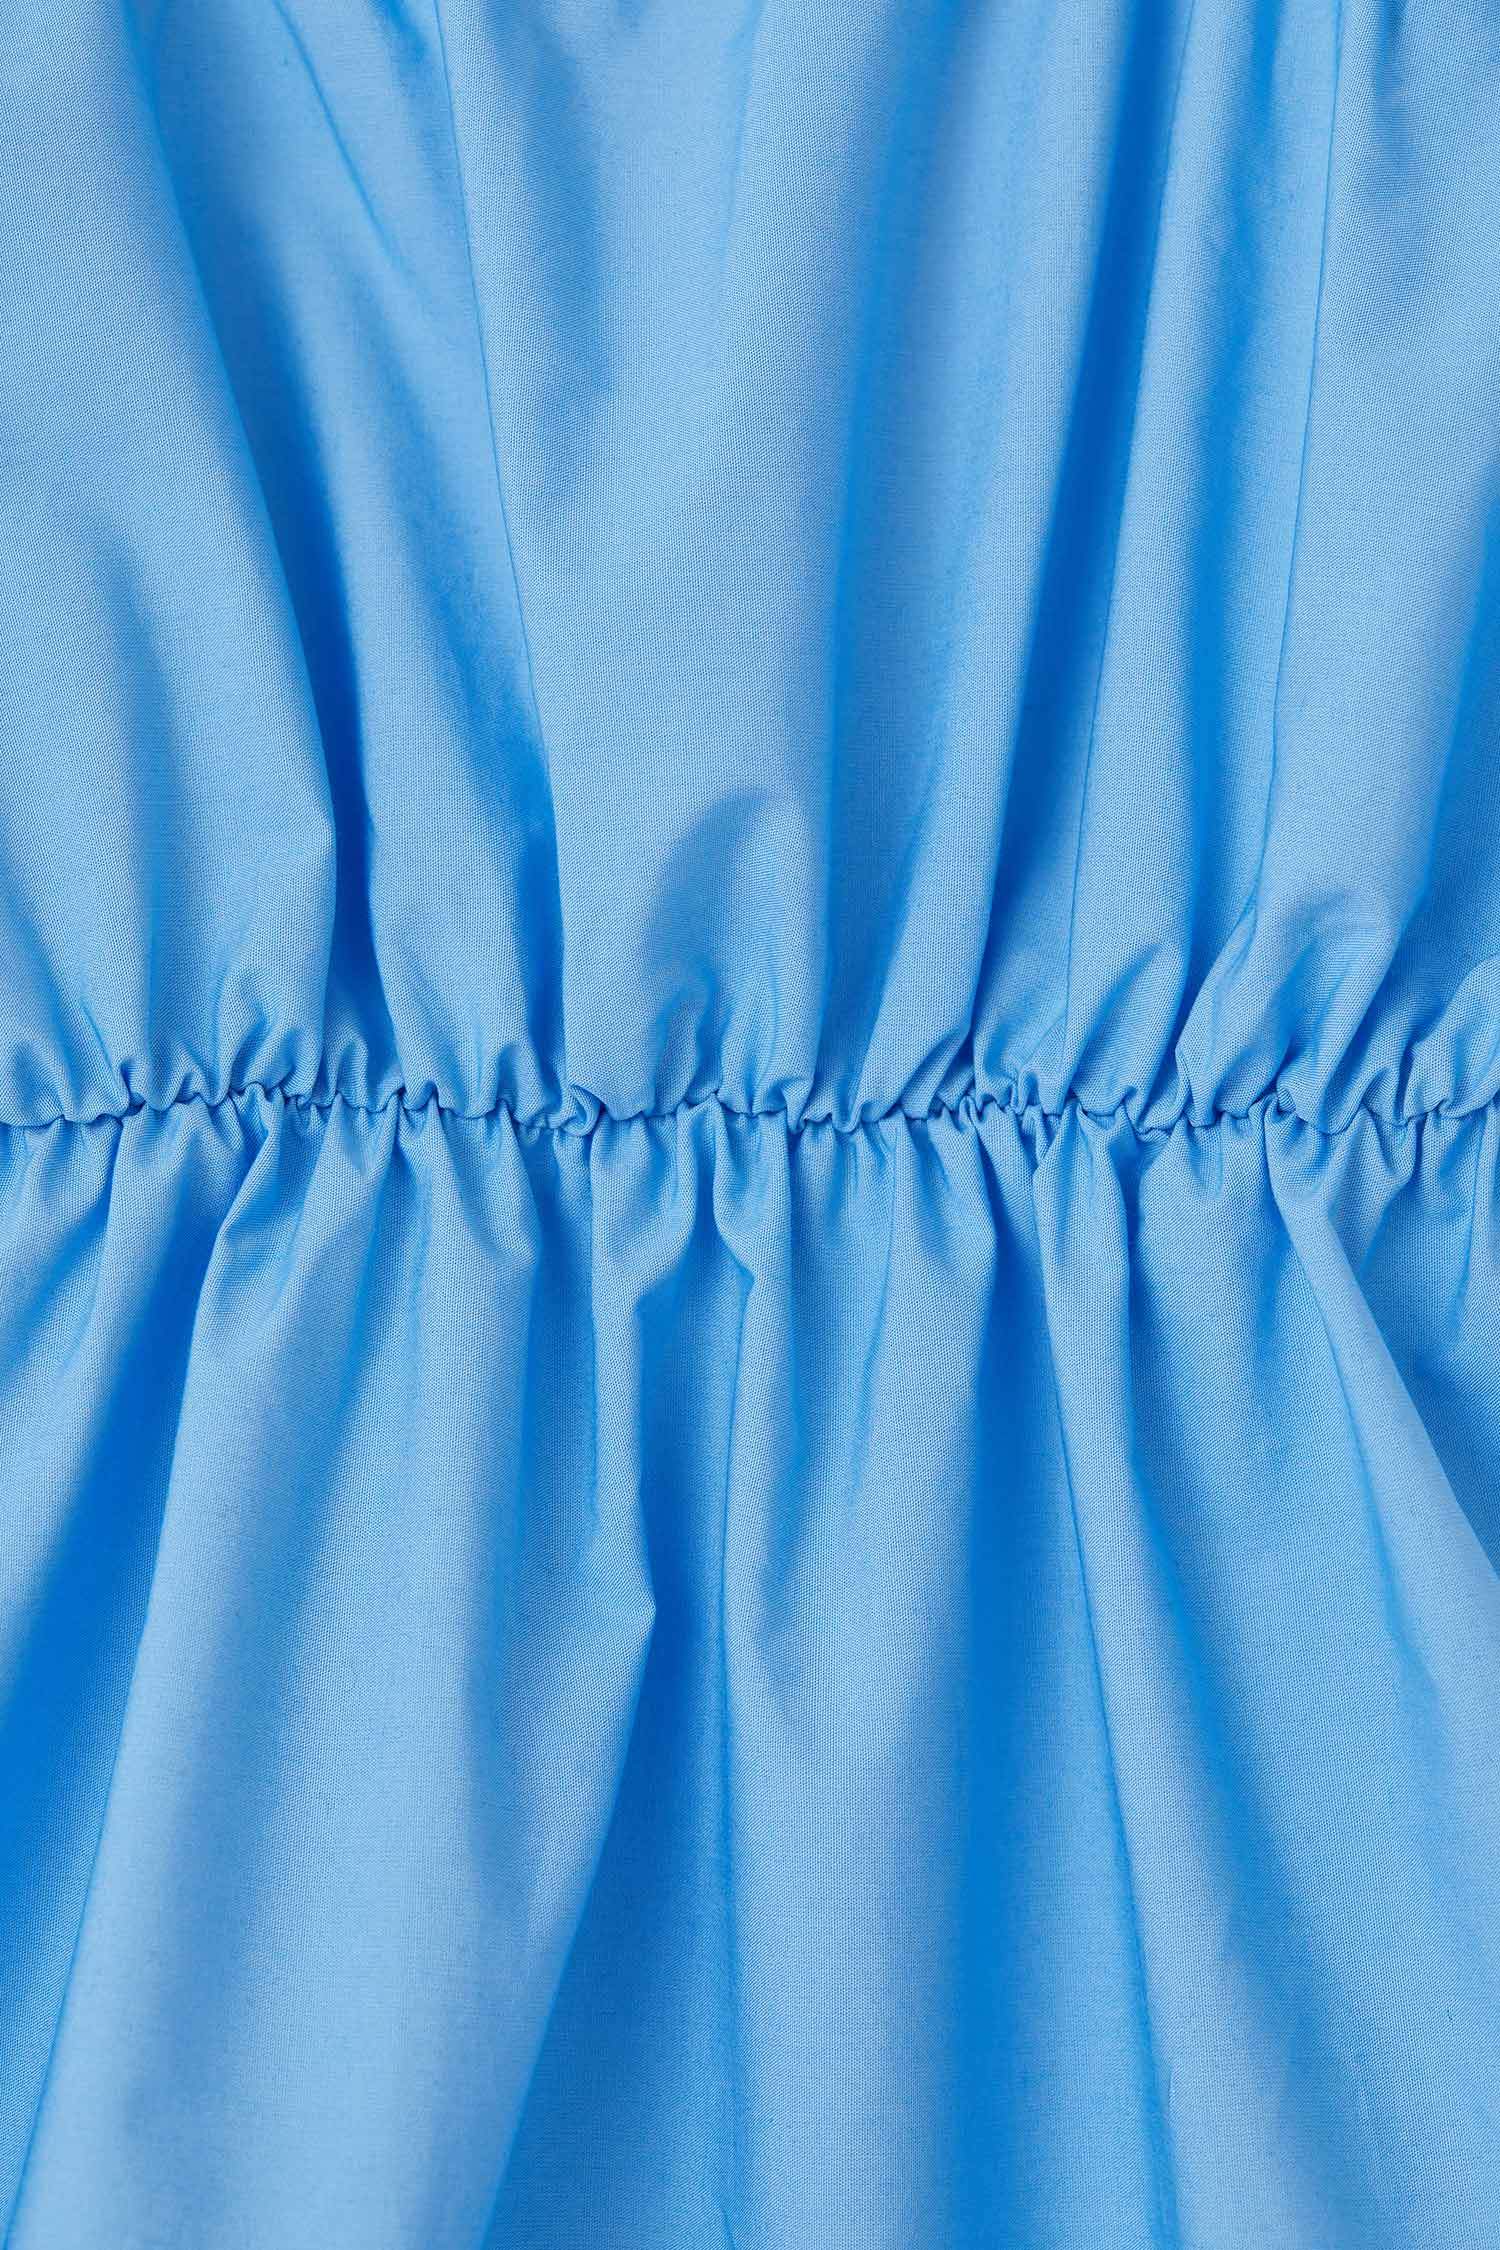 Robe Hiver Bleu à Volants, Filles 2-16A